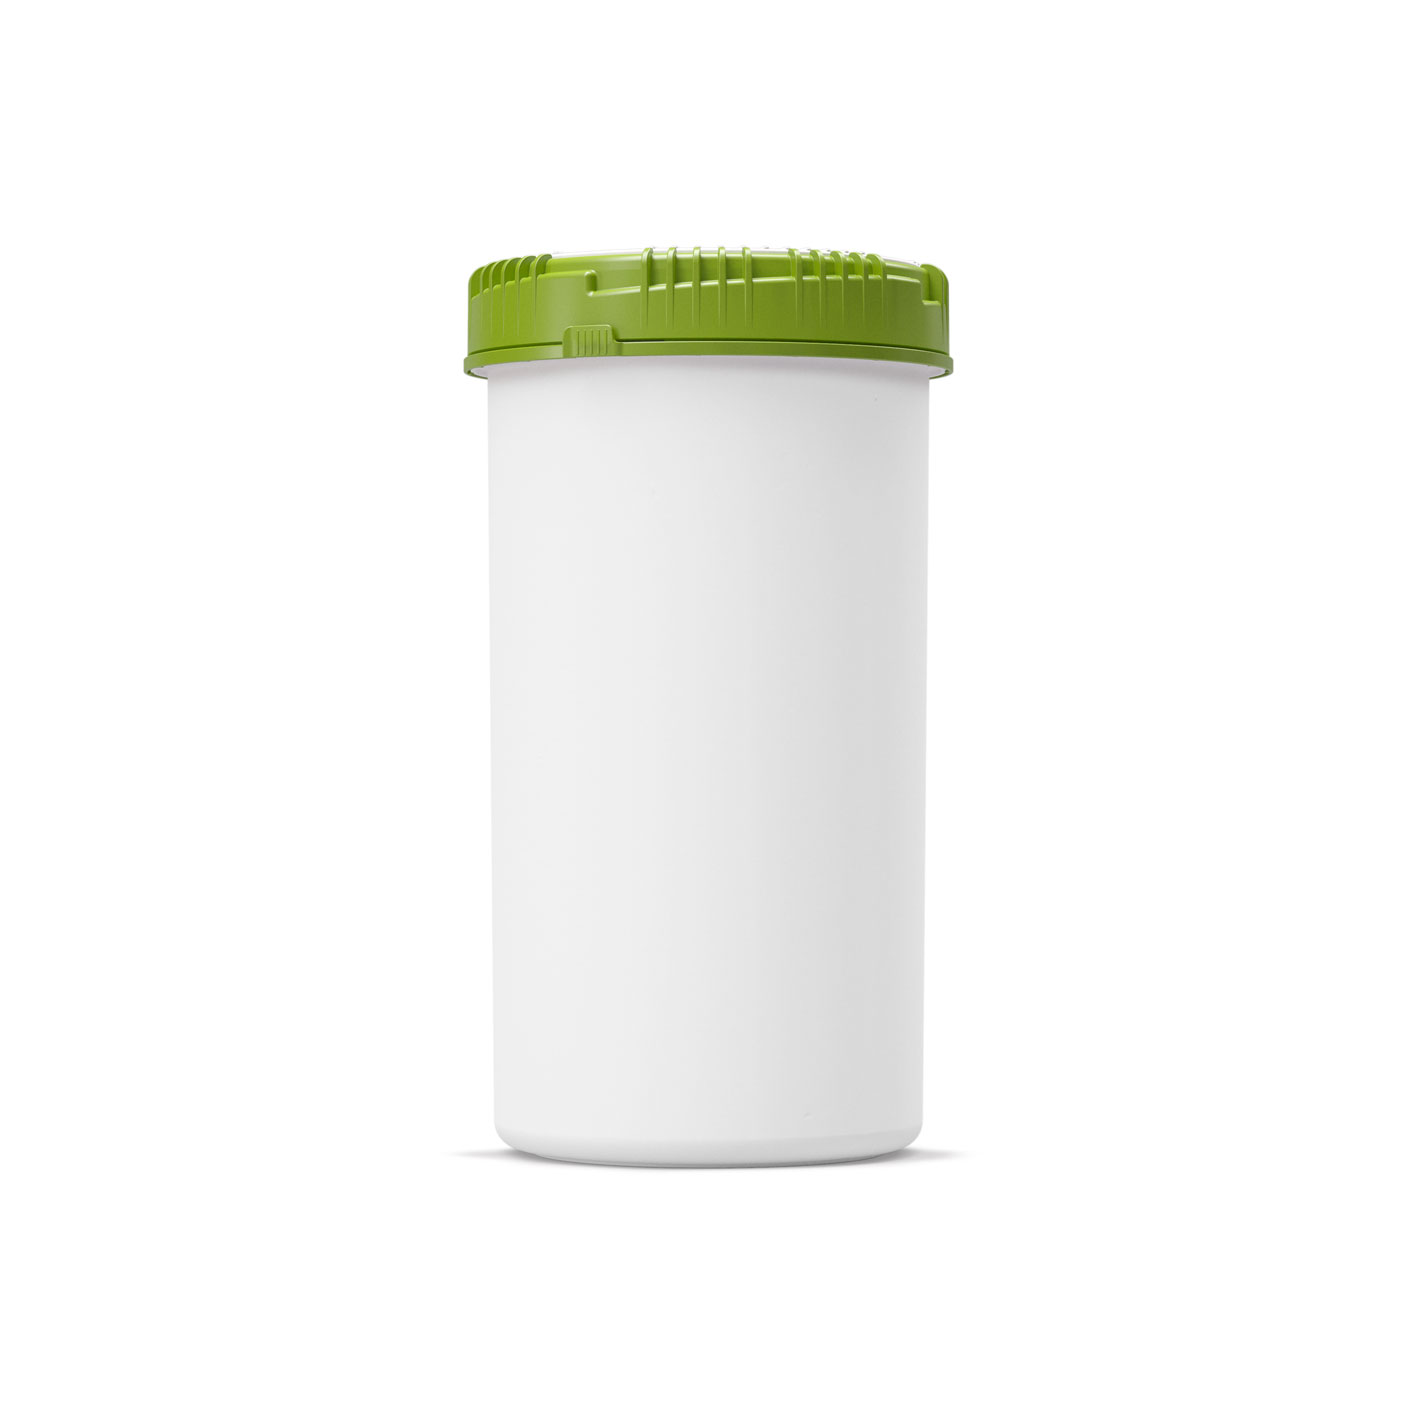 1300 ml biobased Packo pot - 7